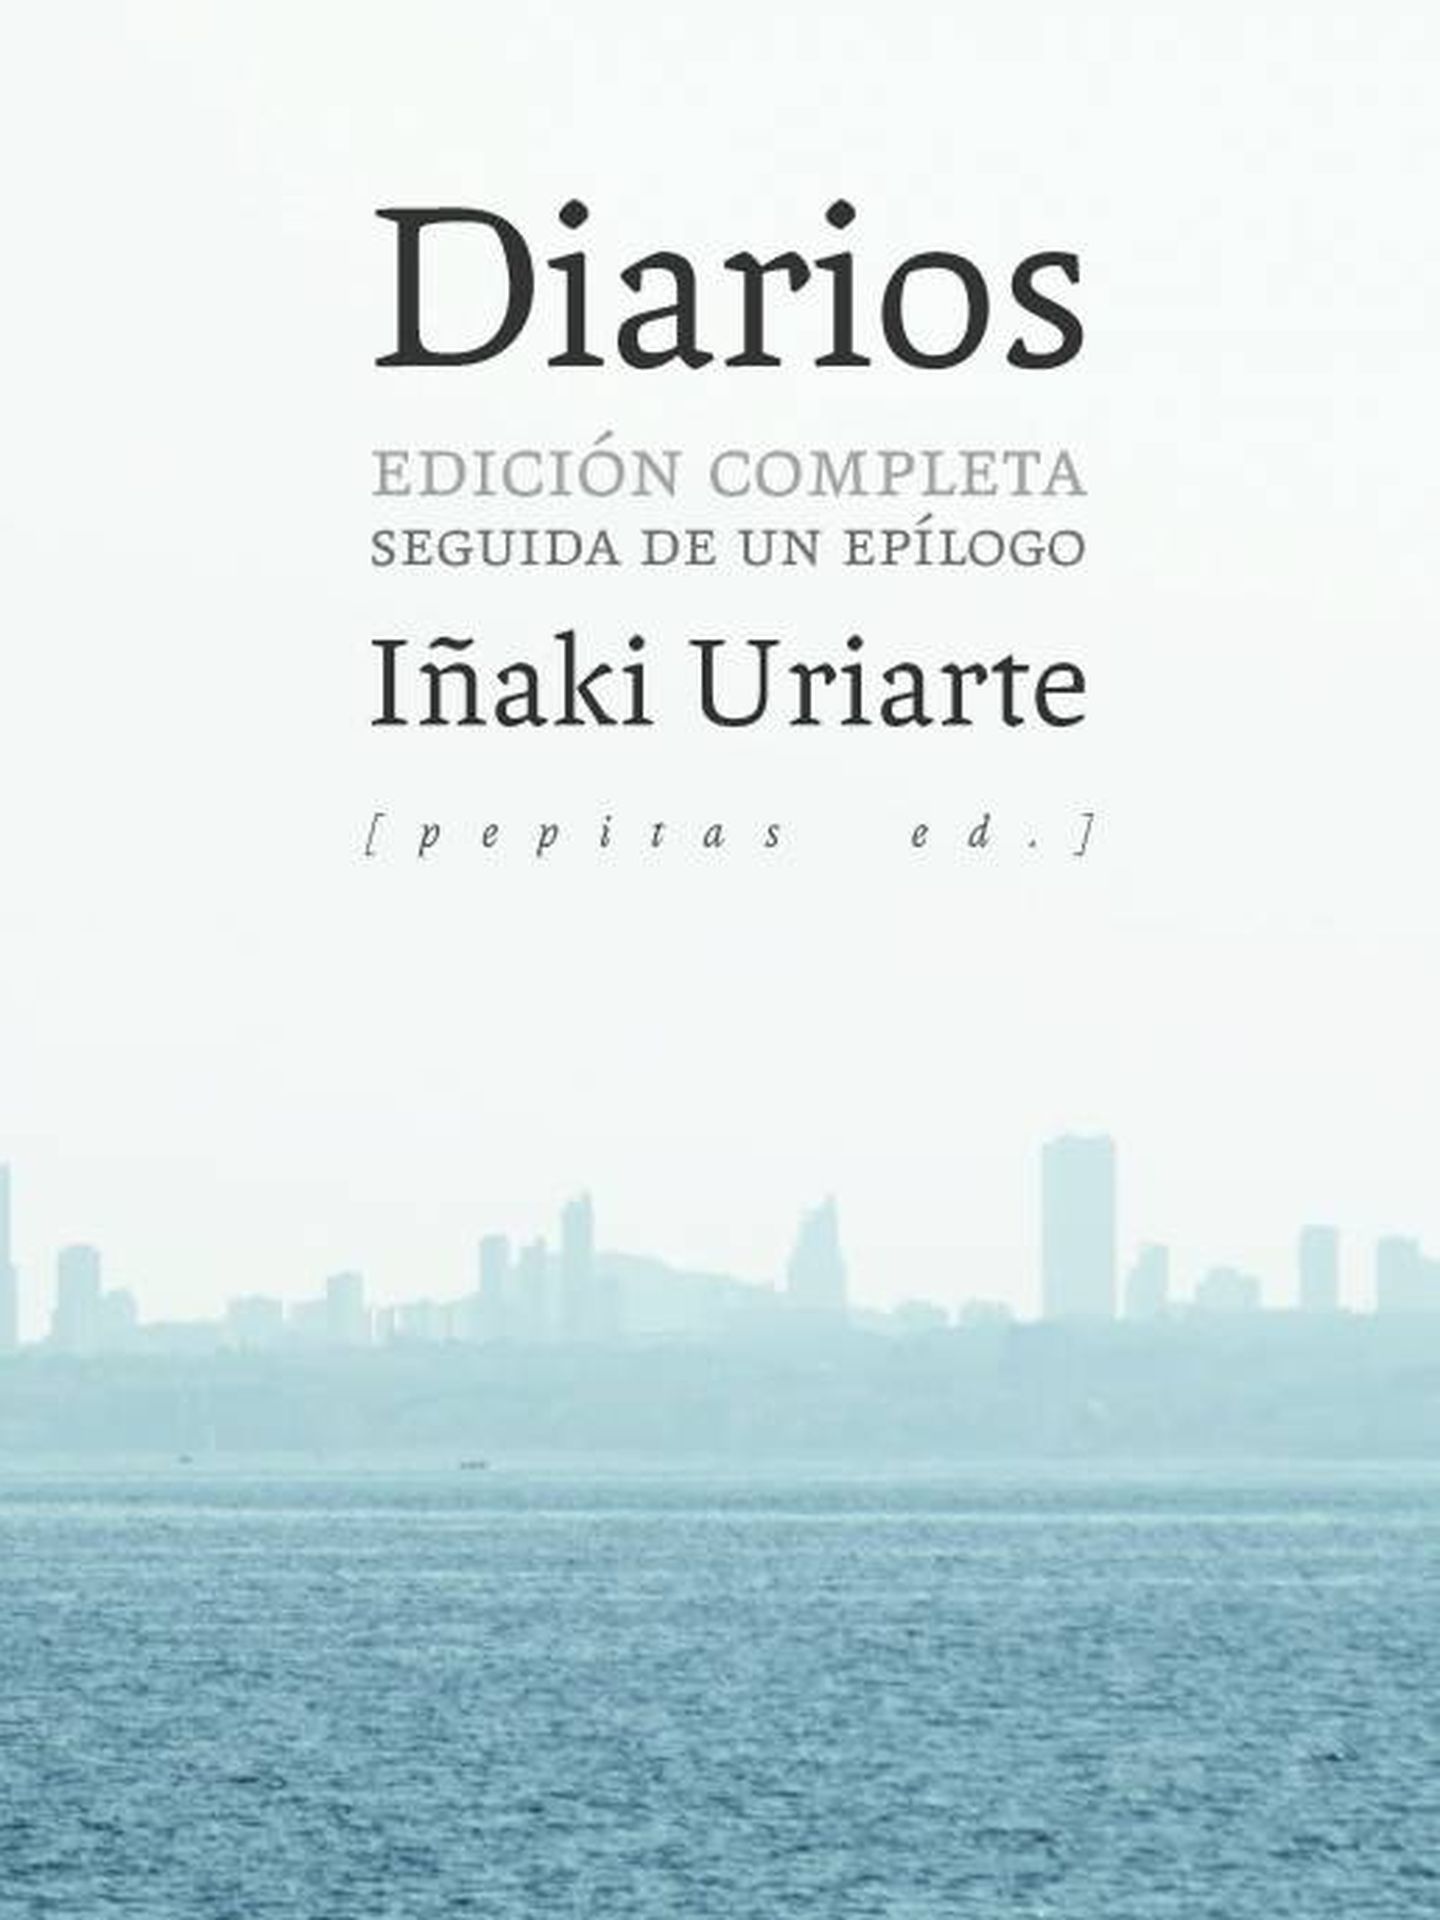 'Diarios', de Iñaki Uriarte